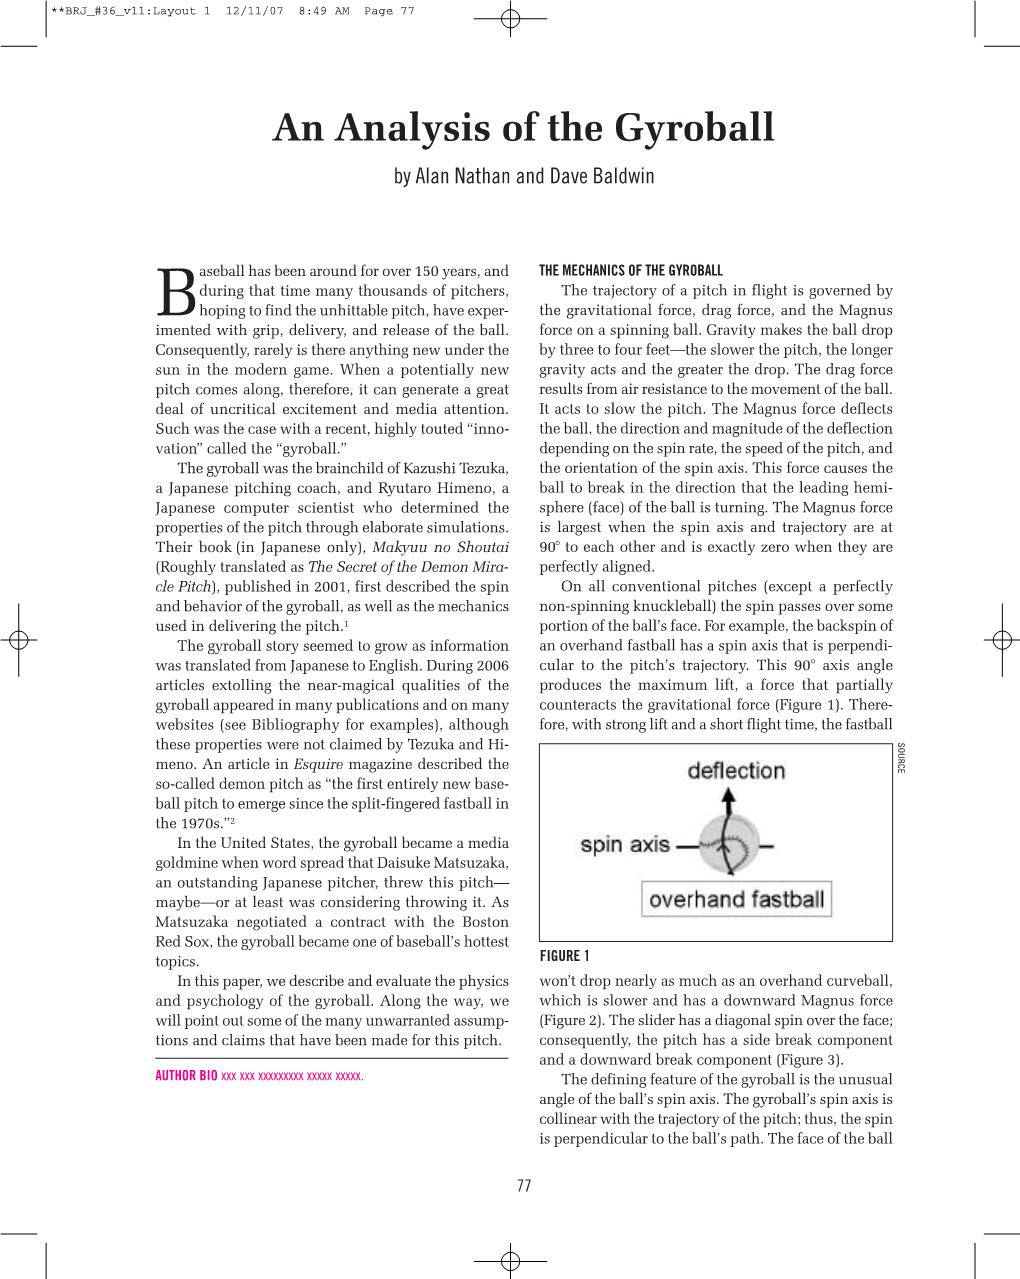 An Analysis of the Gyroball by Alan Nathan and Dave Baldwin